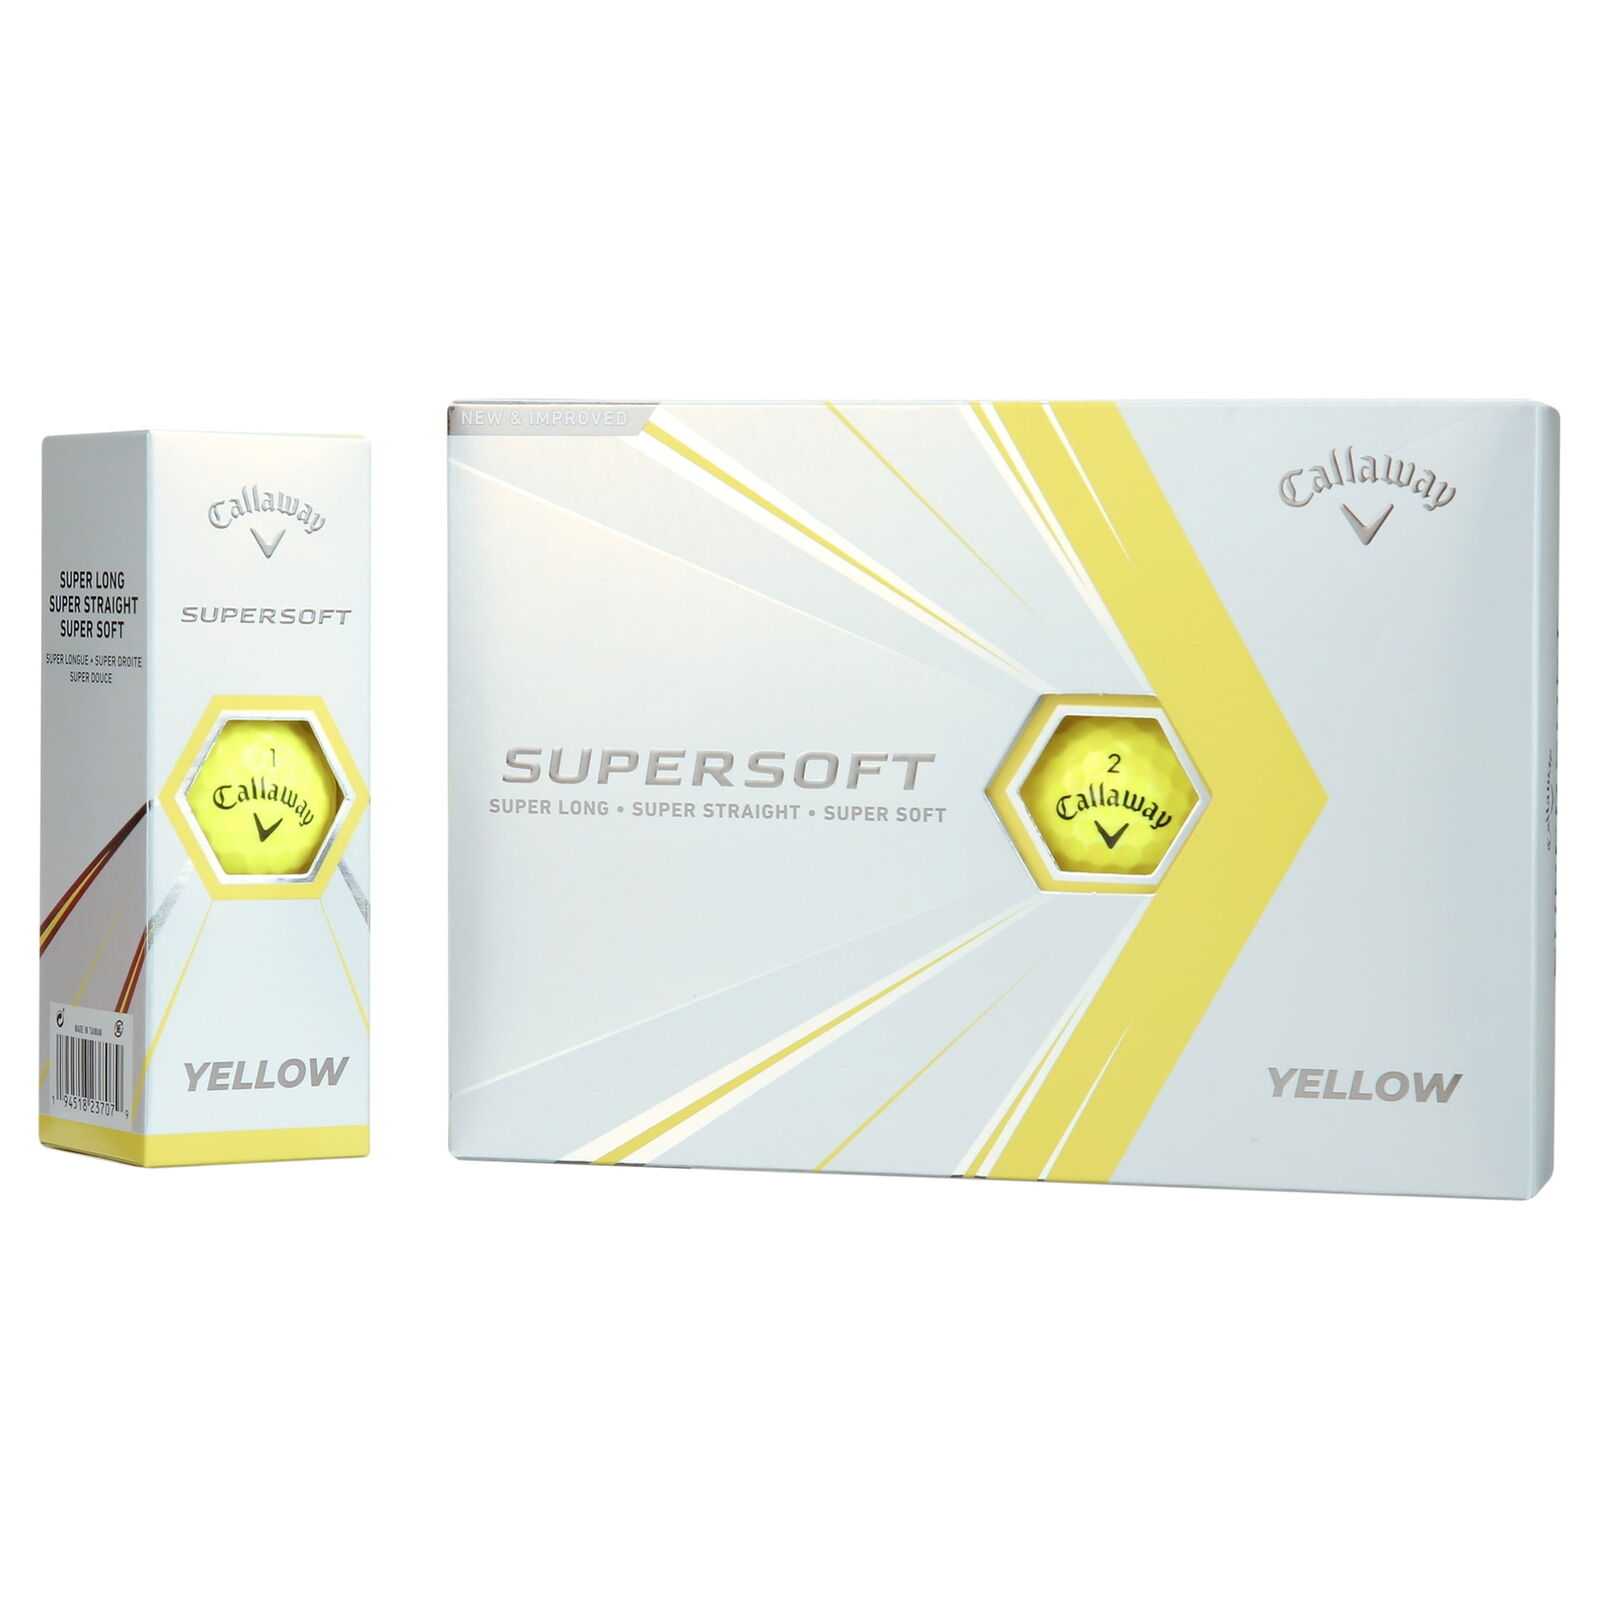 Callaway Supersoft 2021 Golf Balls, Yellow, 12 Pack